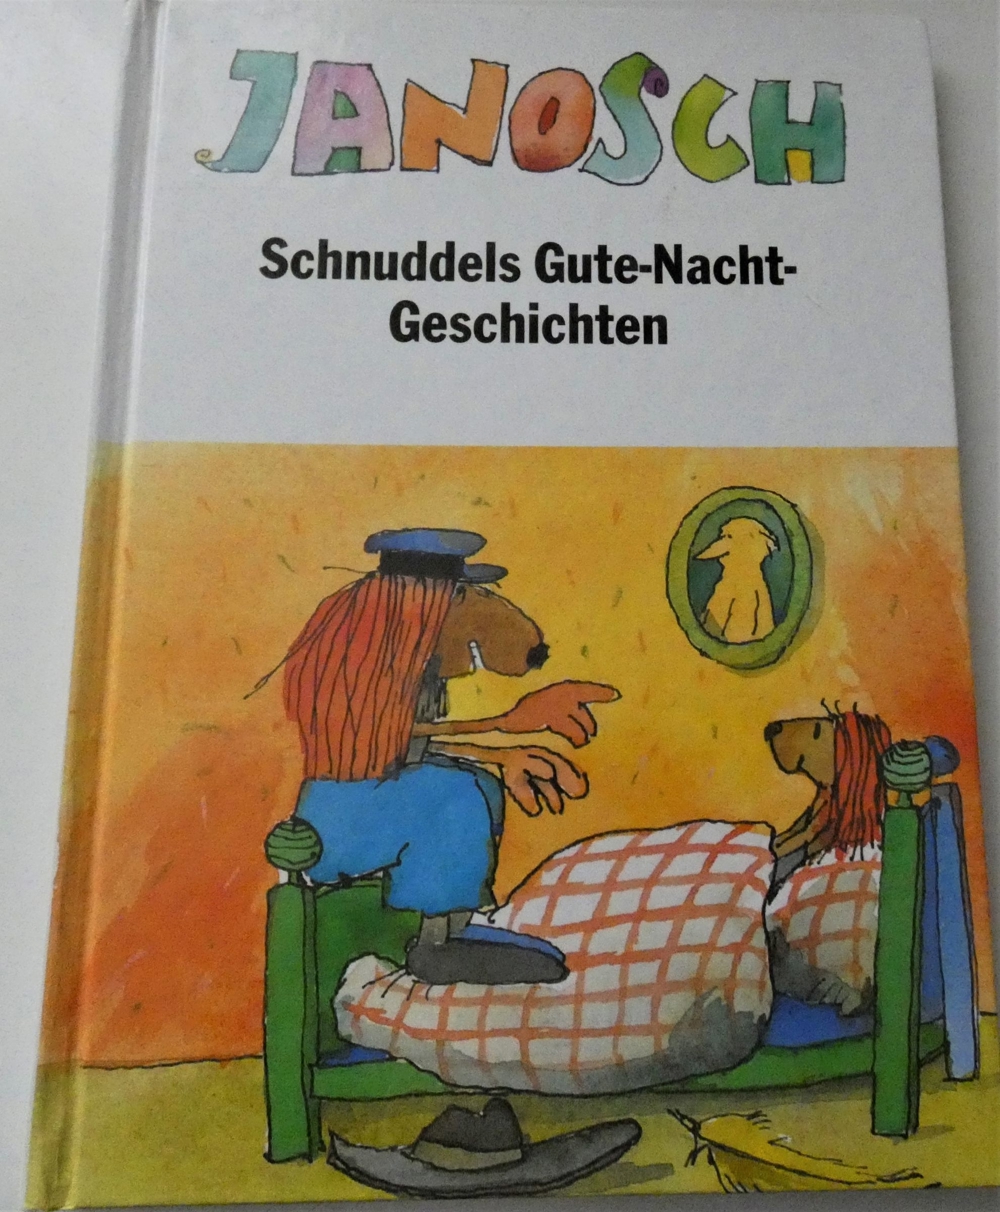 Schnuddels Gute-Nacht-Geschichten / Janosch 1995